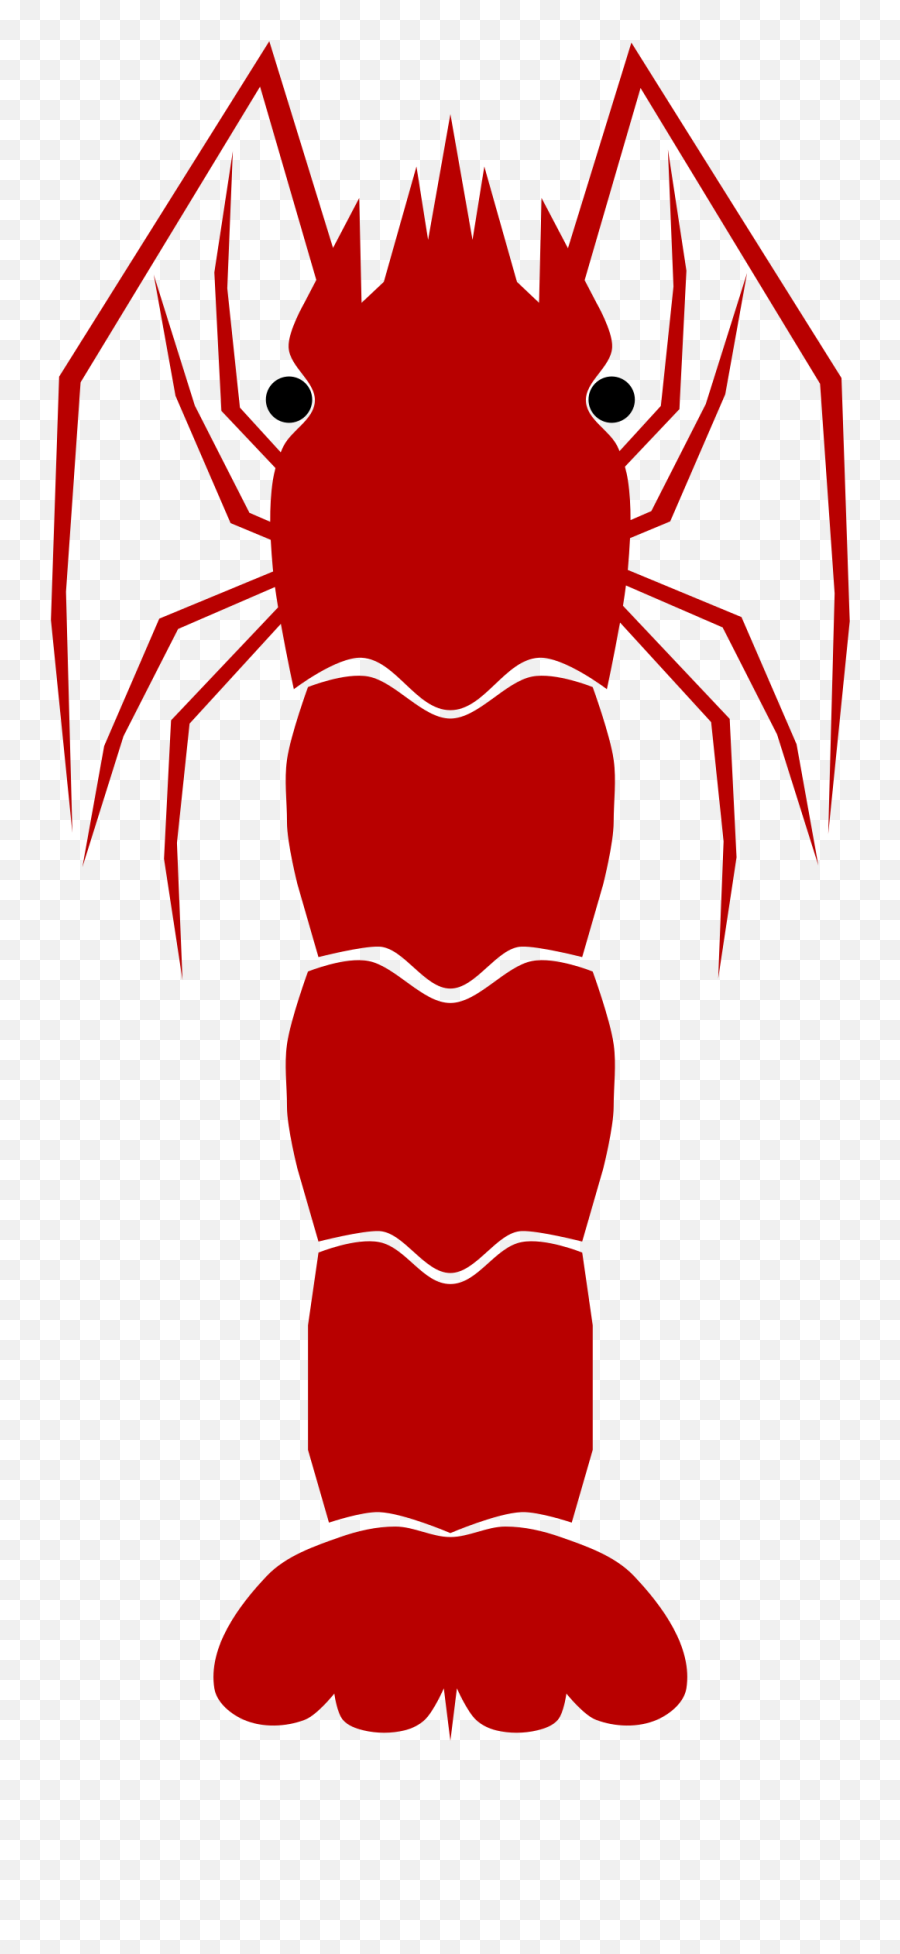 Crabs Clipart Shrimp Crabs Shrimp Transparent Free For - Shrimp Emoji,Shrimp Emoji